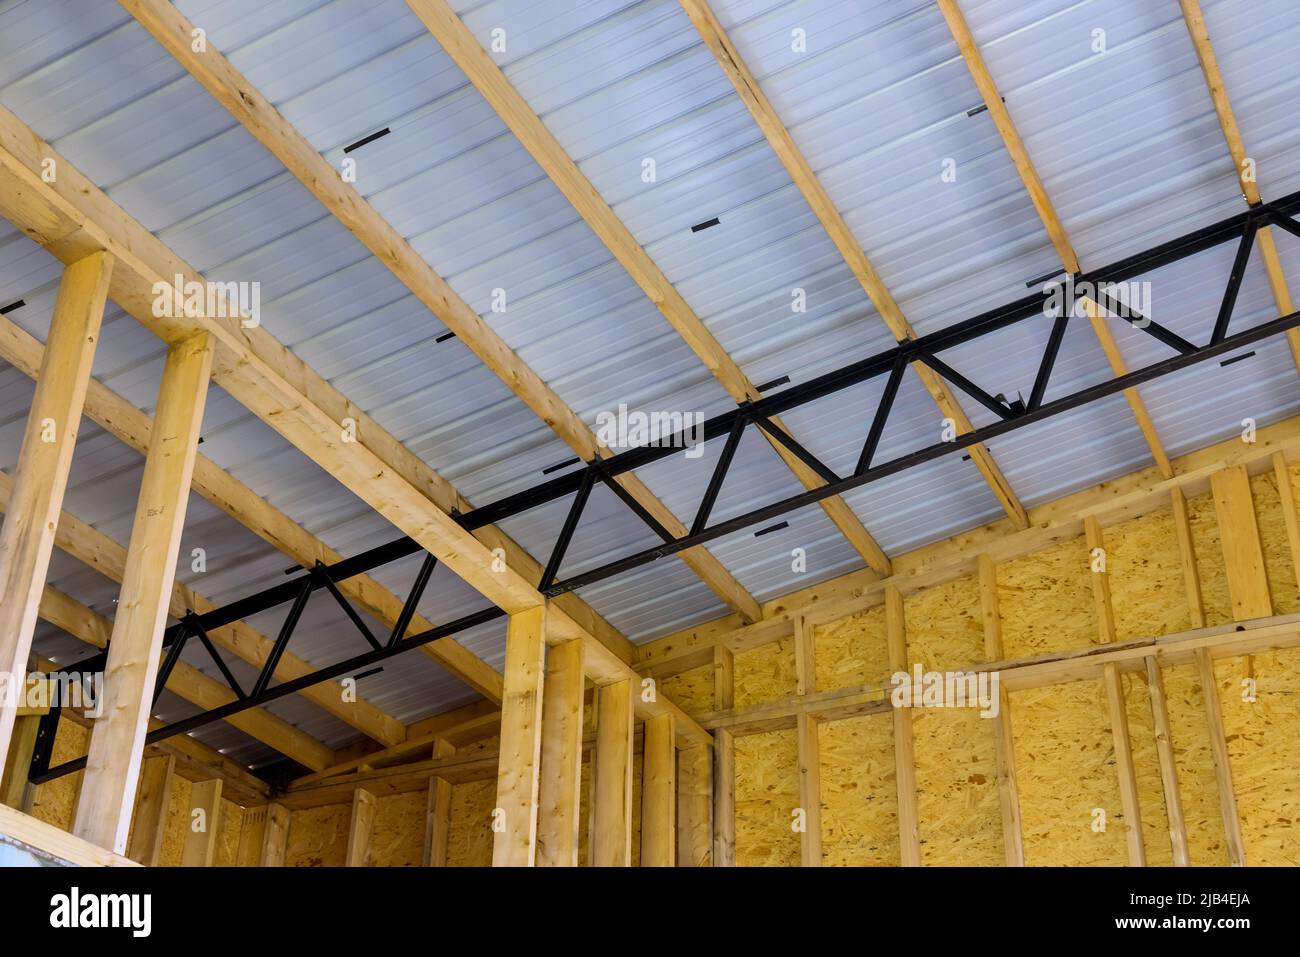 Composición del marco de construcción con vigas de madera paneles para techos Foto de stock